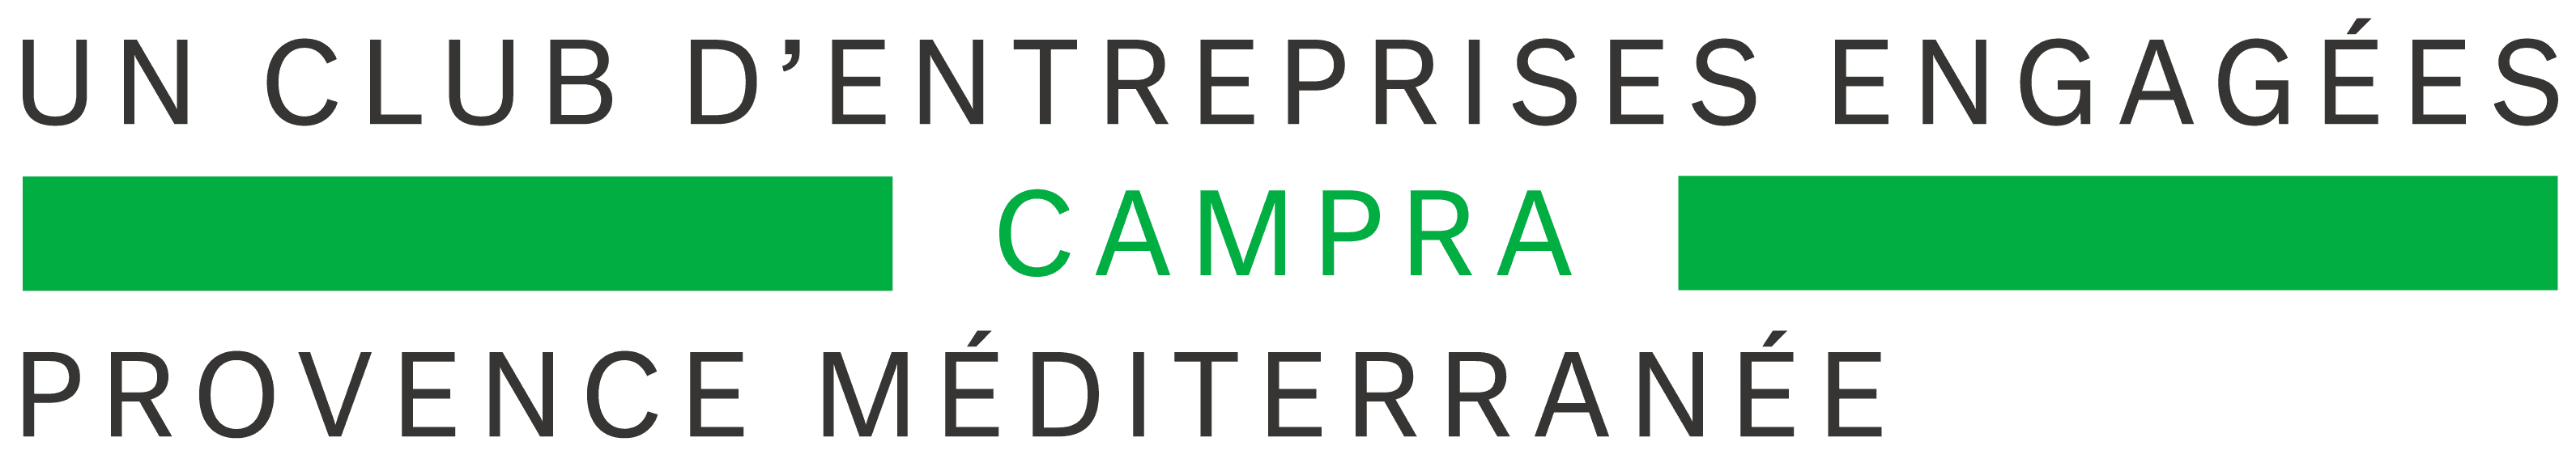 Club Campra (logo)